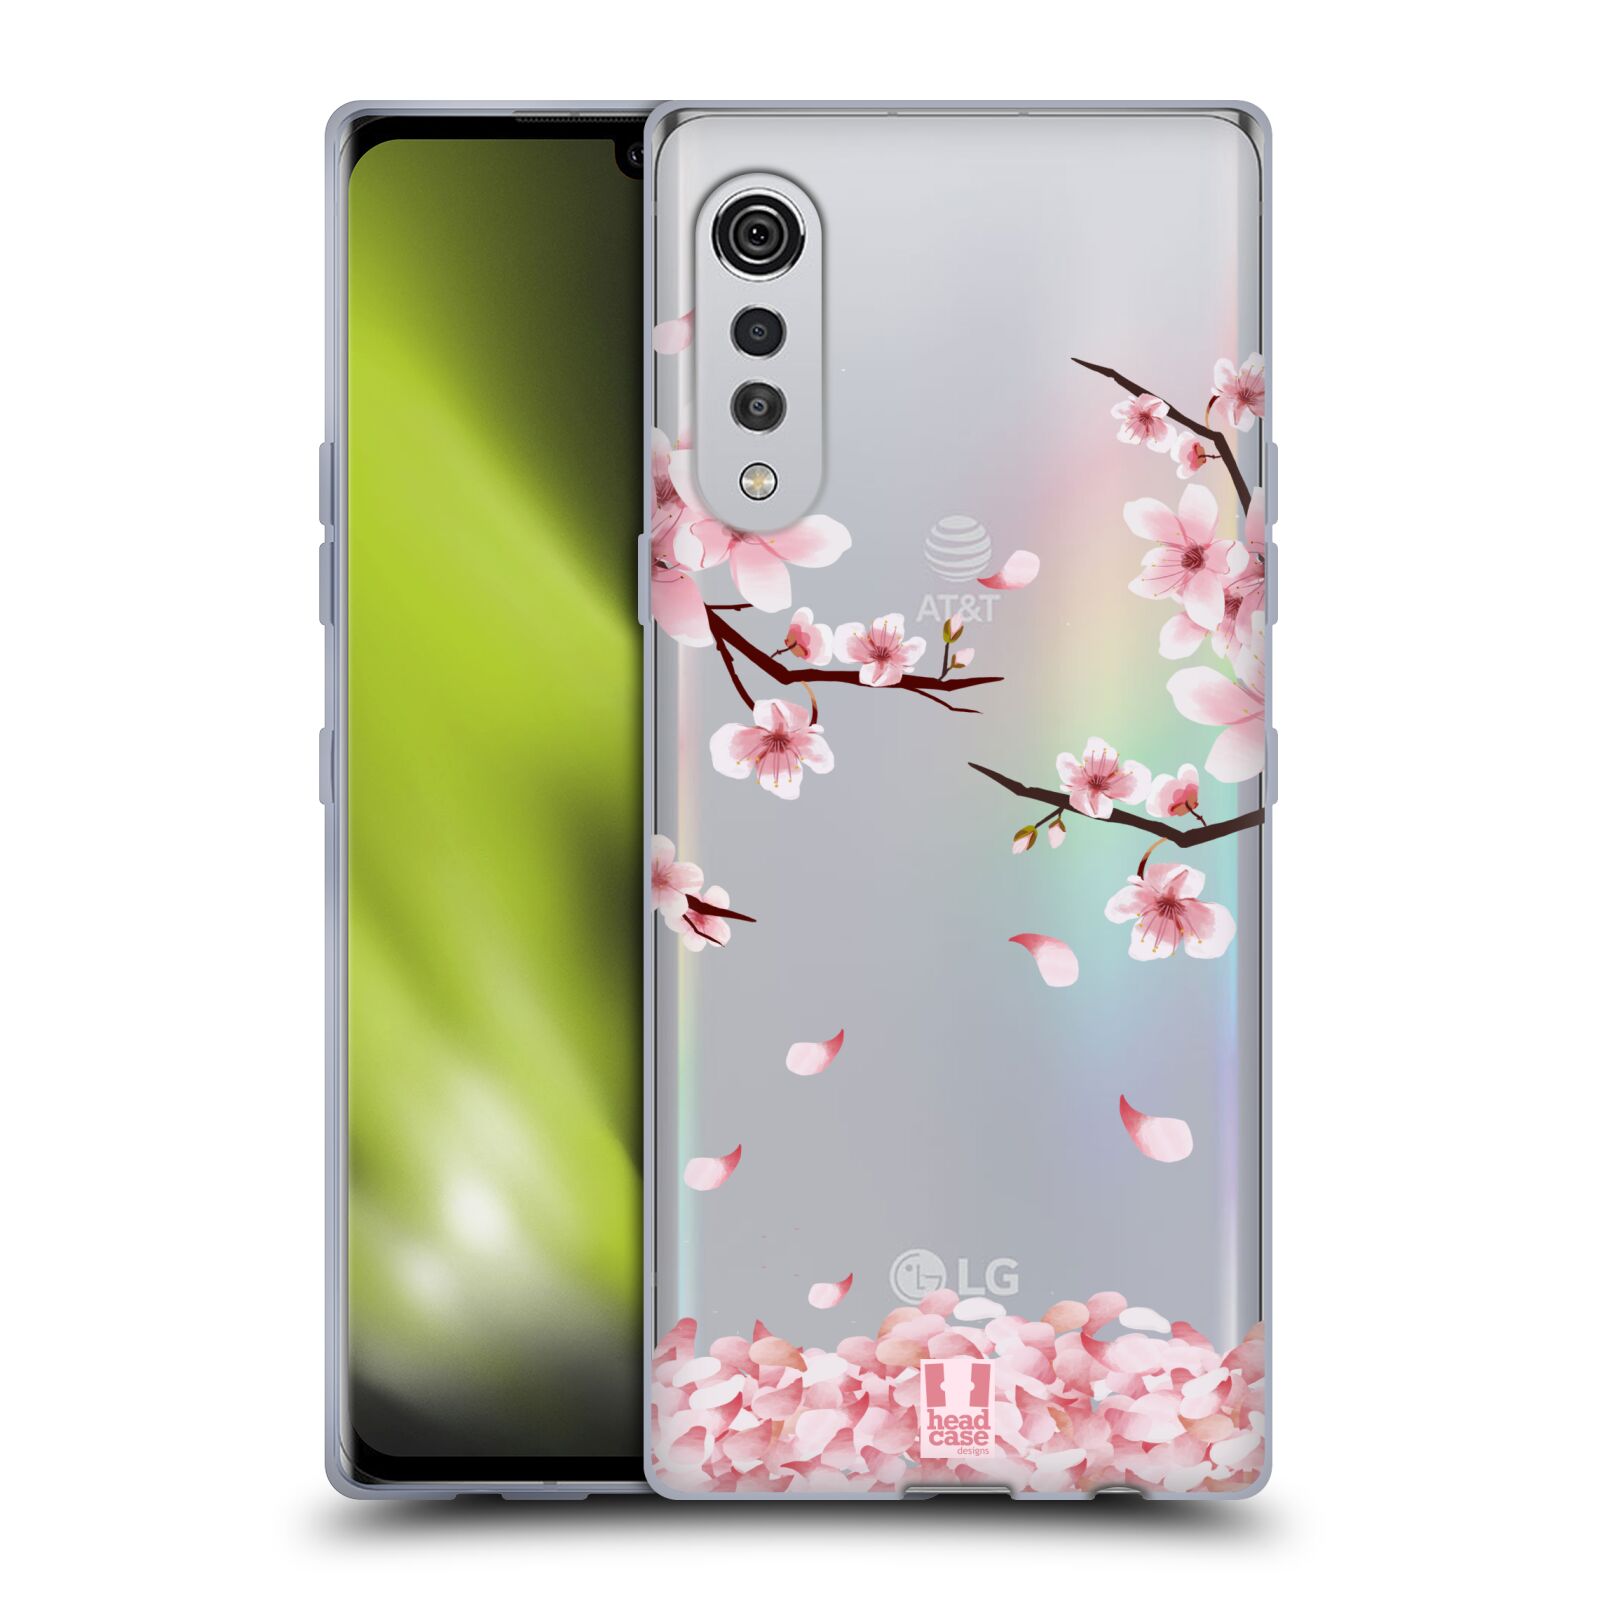 Silikonové pouzdro na mobil LG Velvet - Head Case - Květy a větvičky